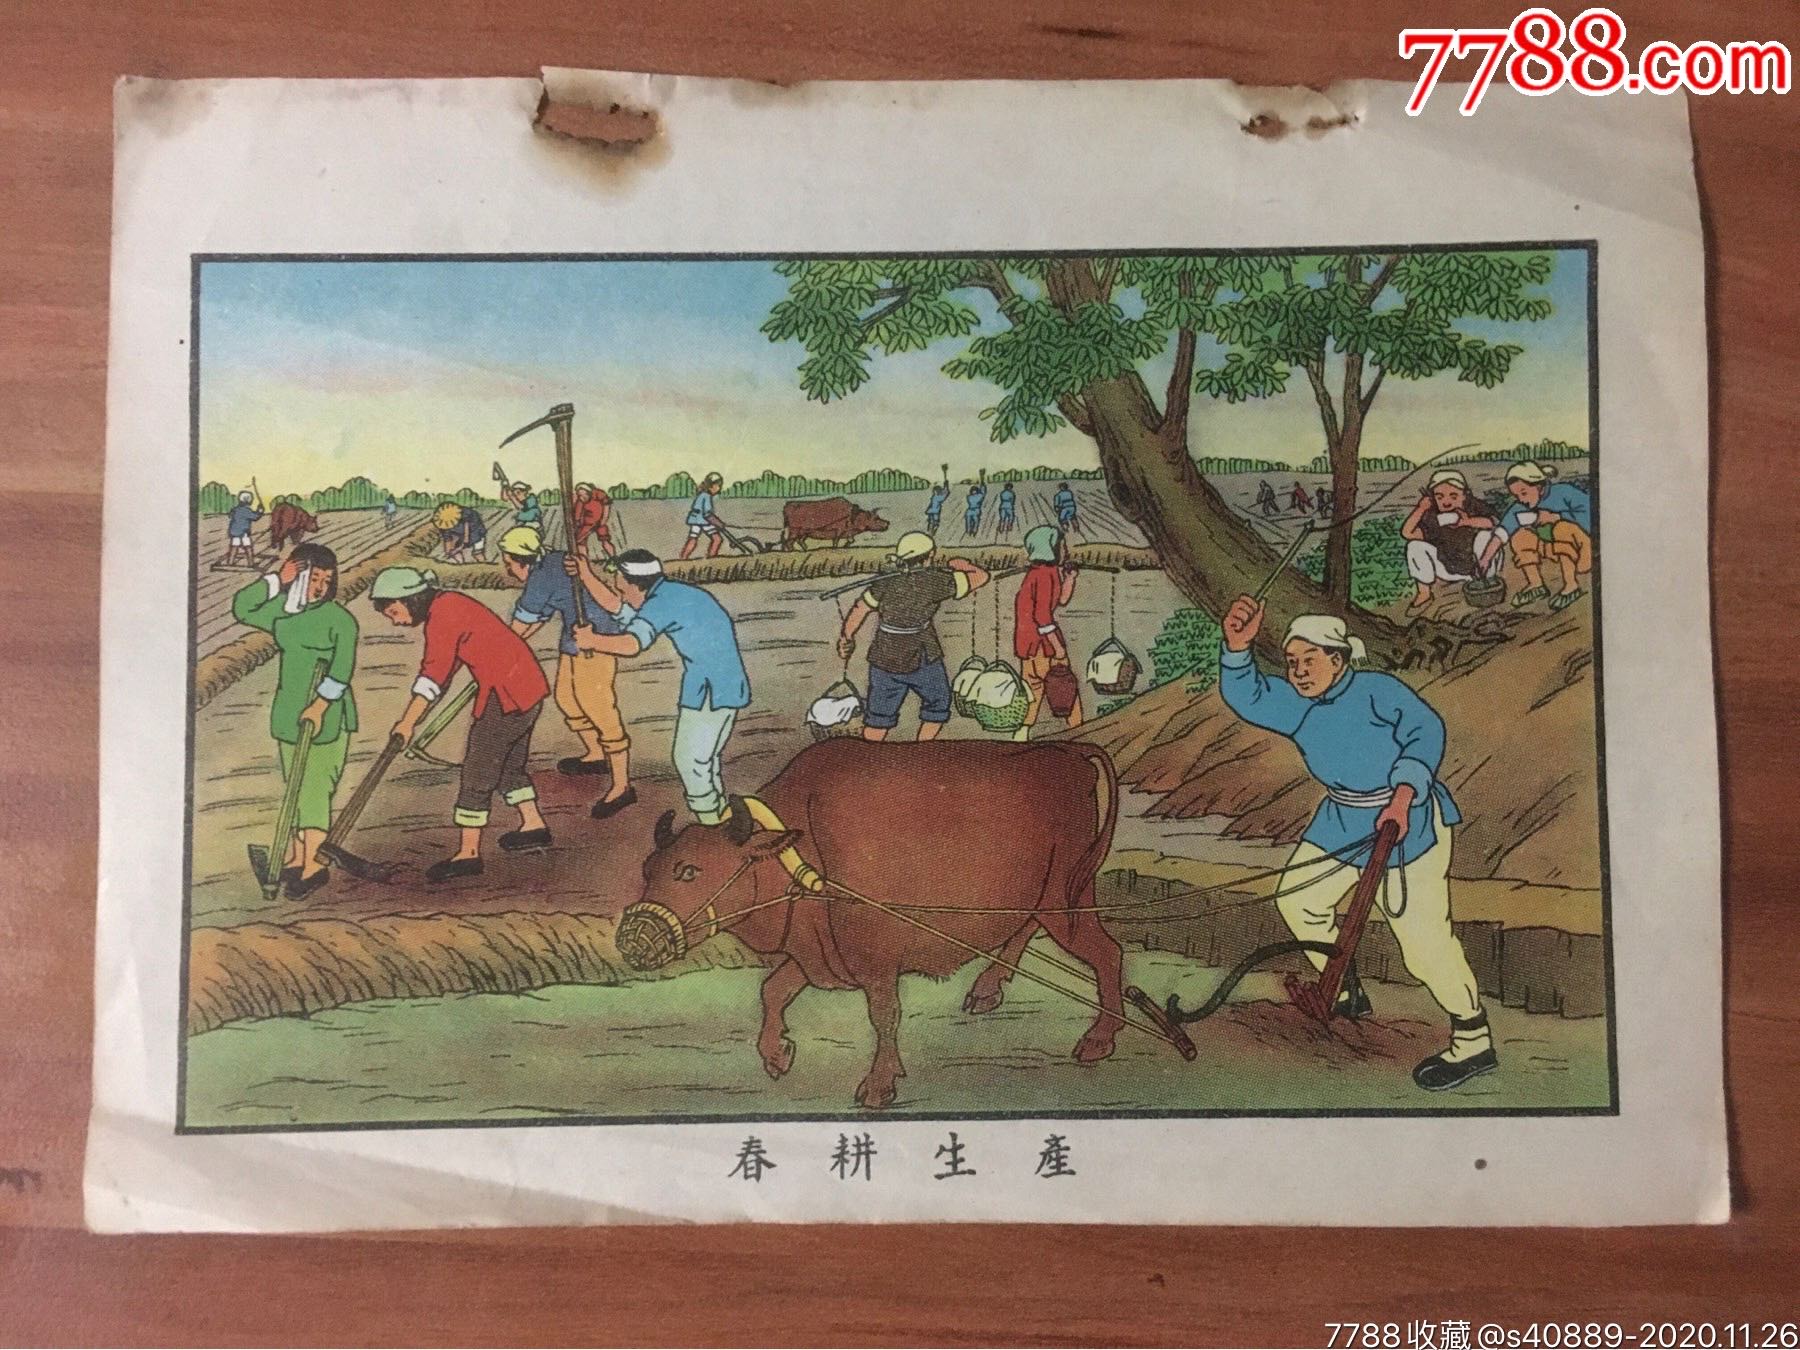 春耕生产(建国初土改完成题材,上海1950)